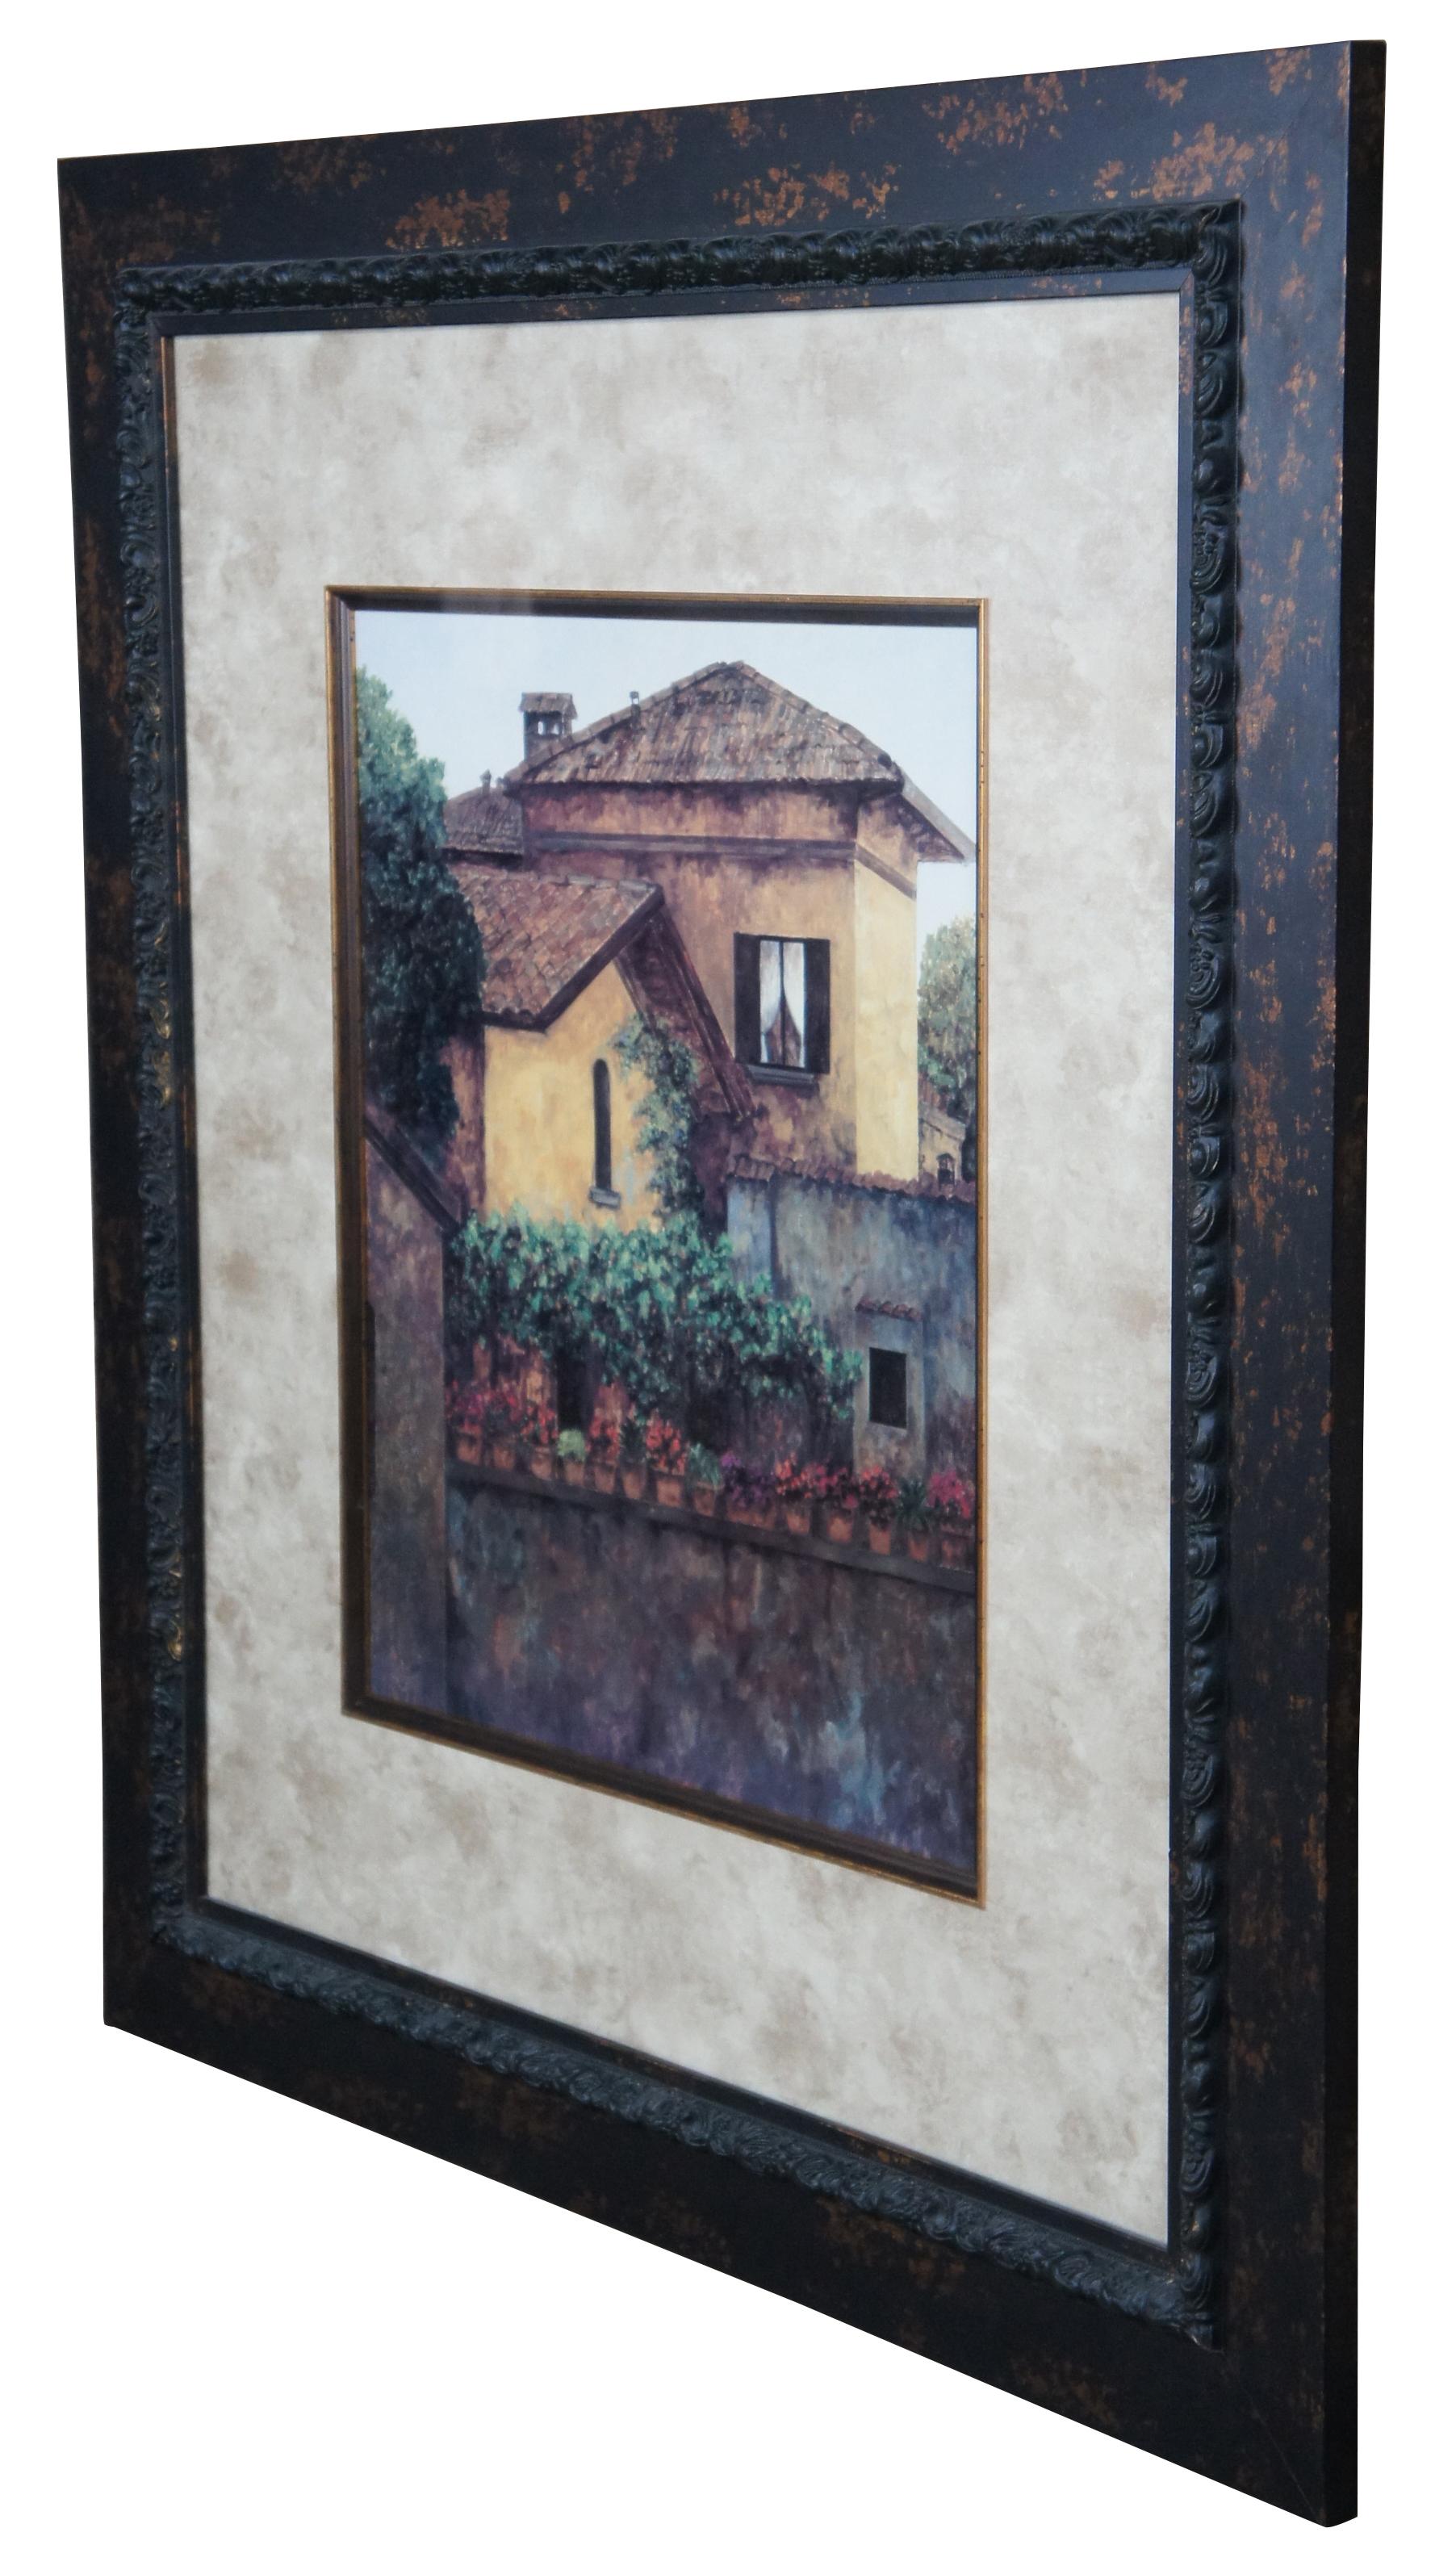 Vintage Baldwin Art Group Golden Villa framed Tuscan print. Measures: 44